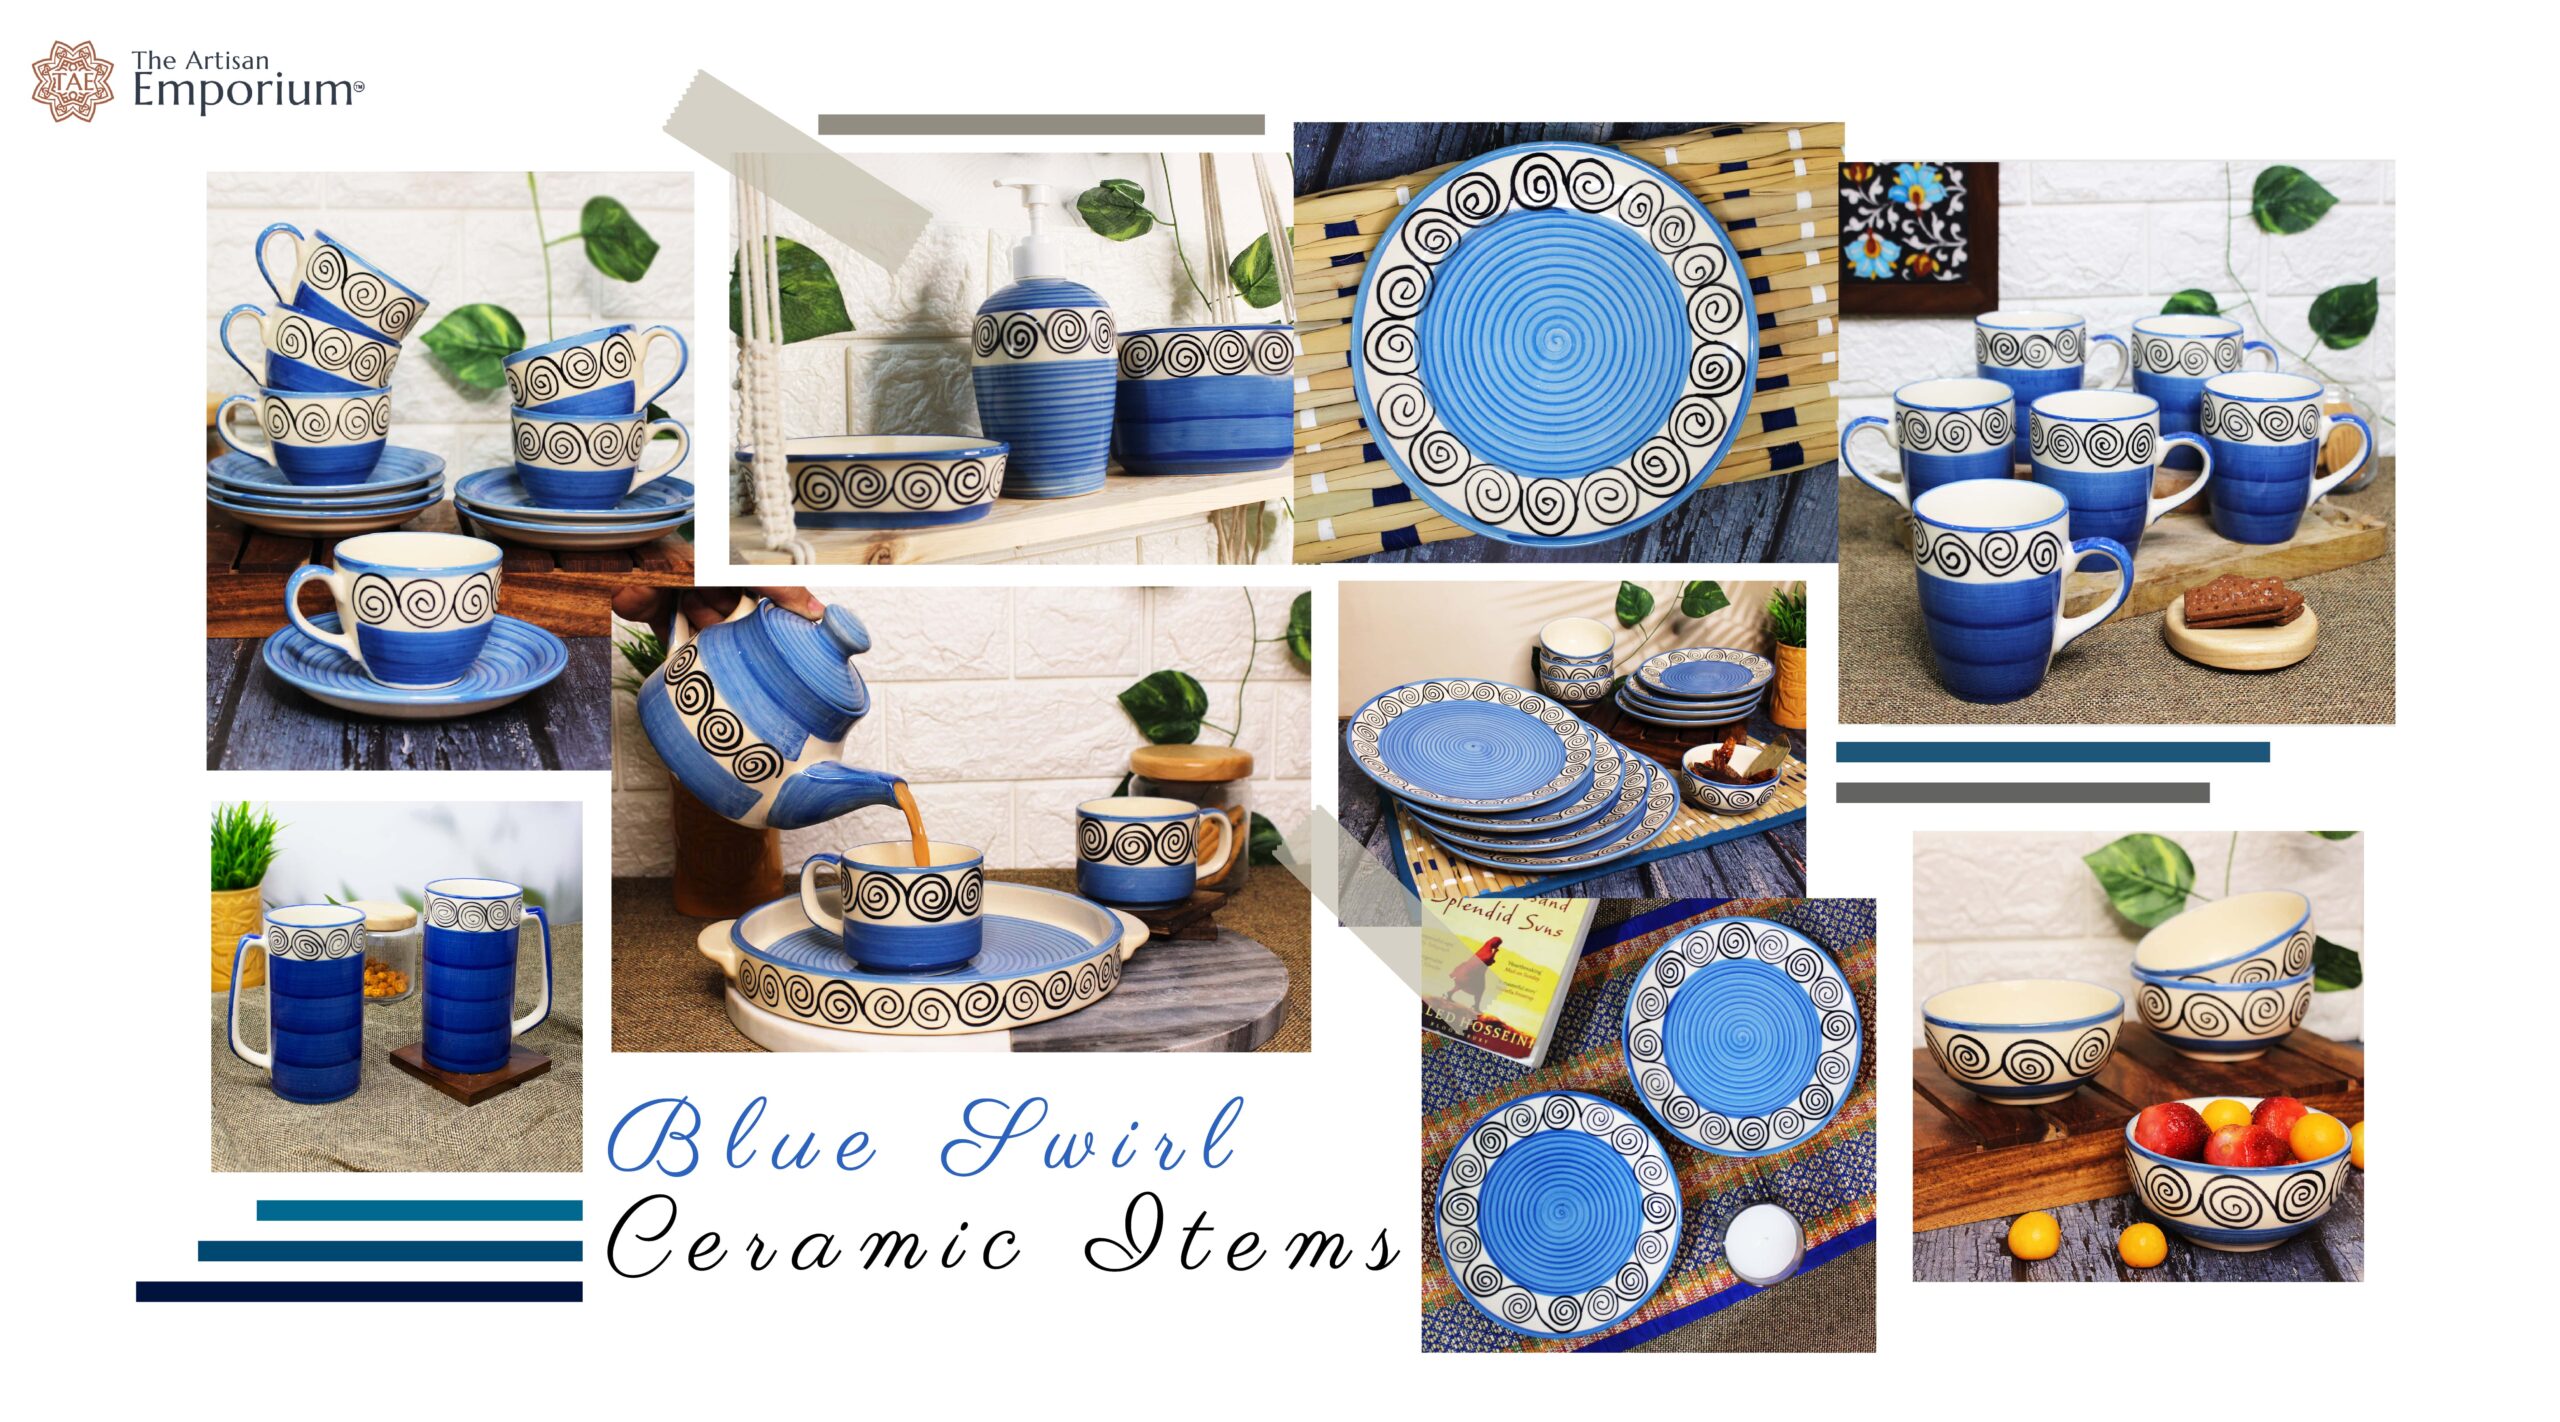 Blue Swirl Ceramic Items - The Artisan Emporium